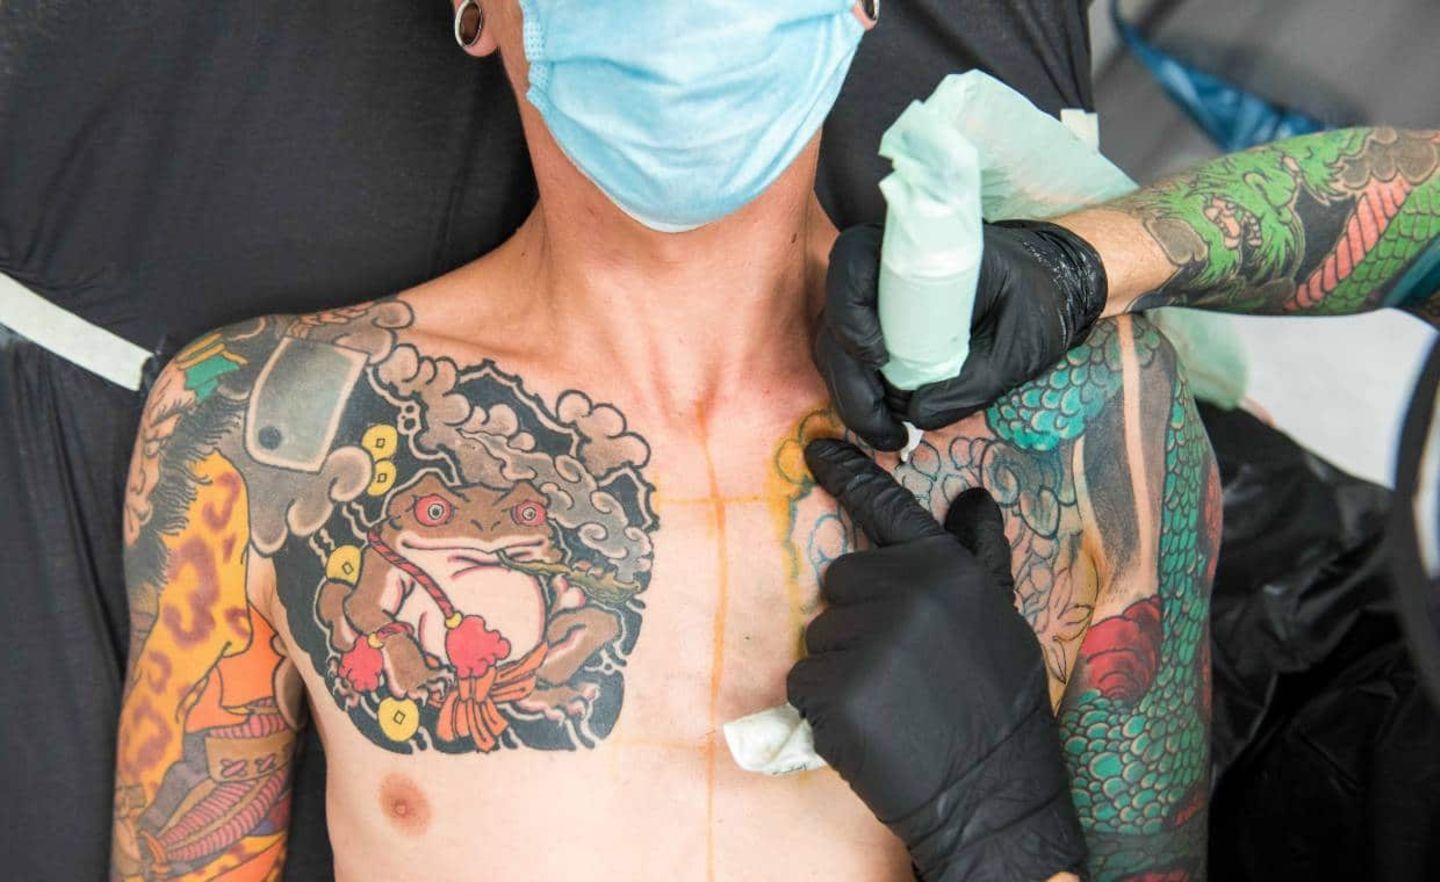 Ein Mann wird im Tattoostudio der Firma Edding tätowiert